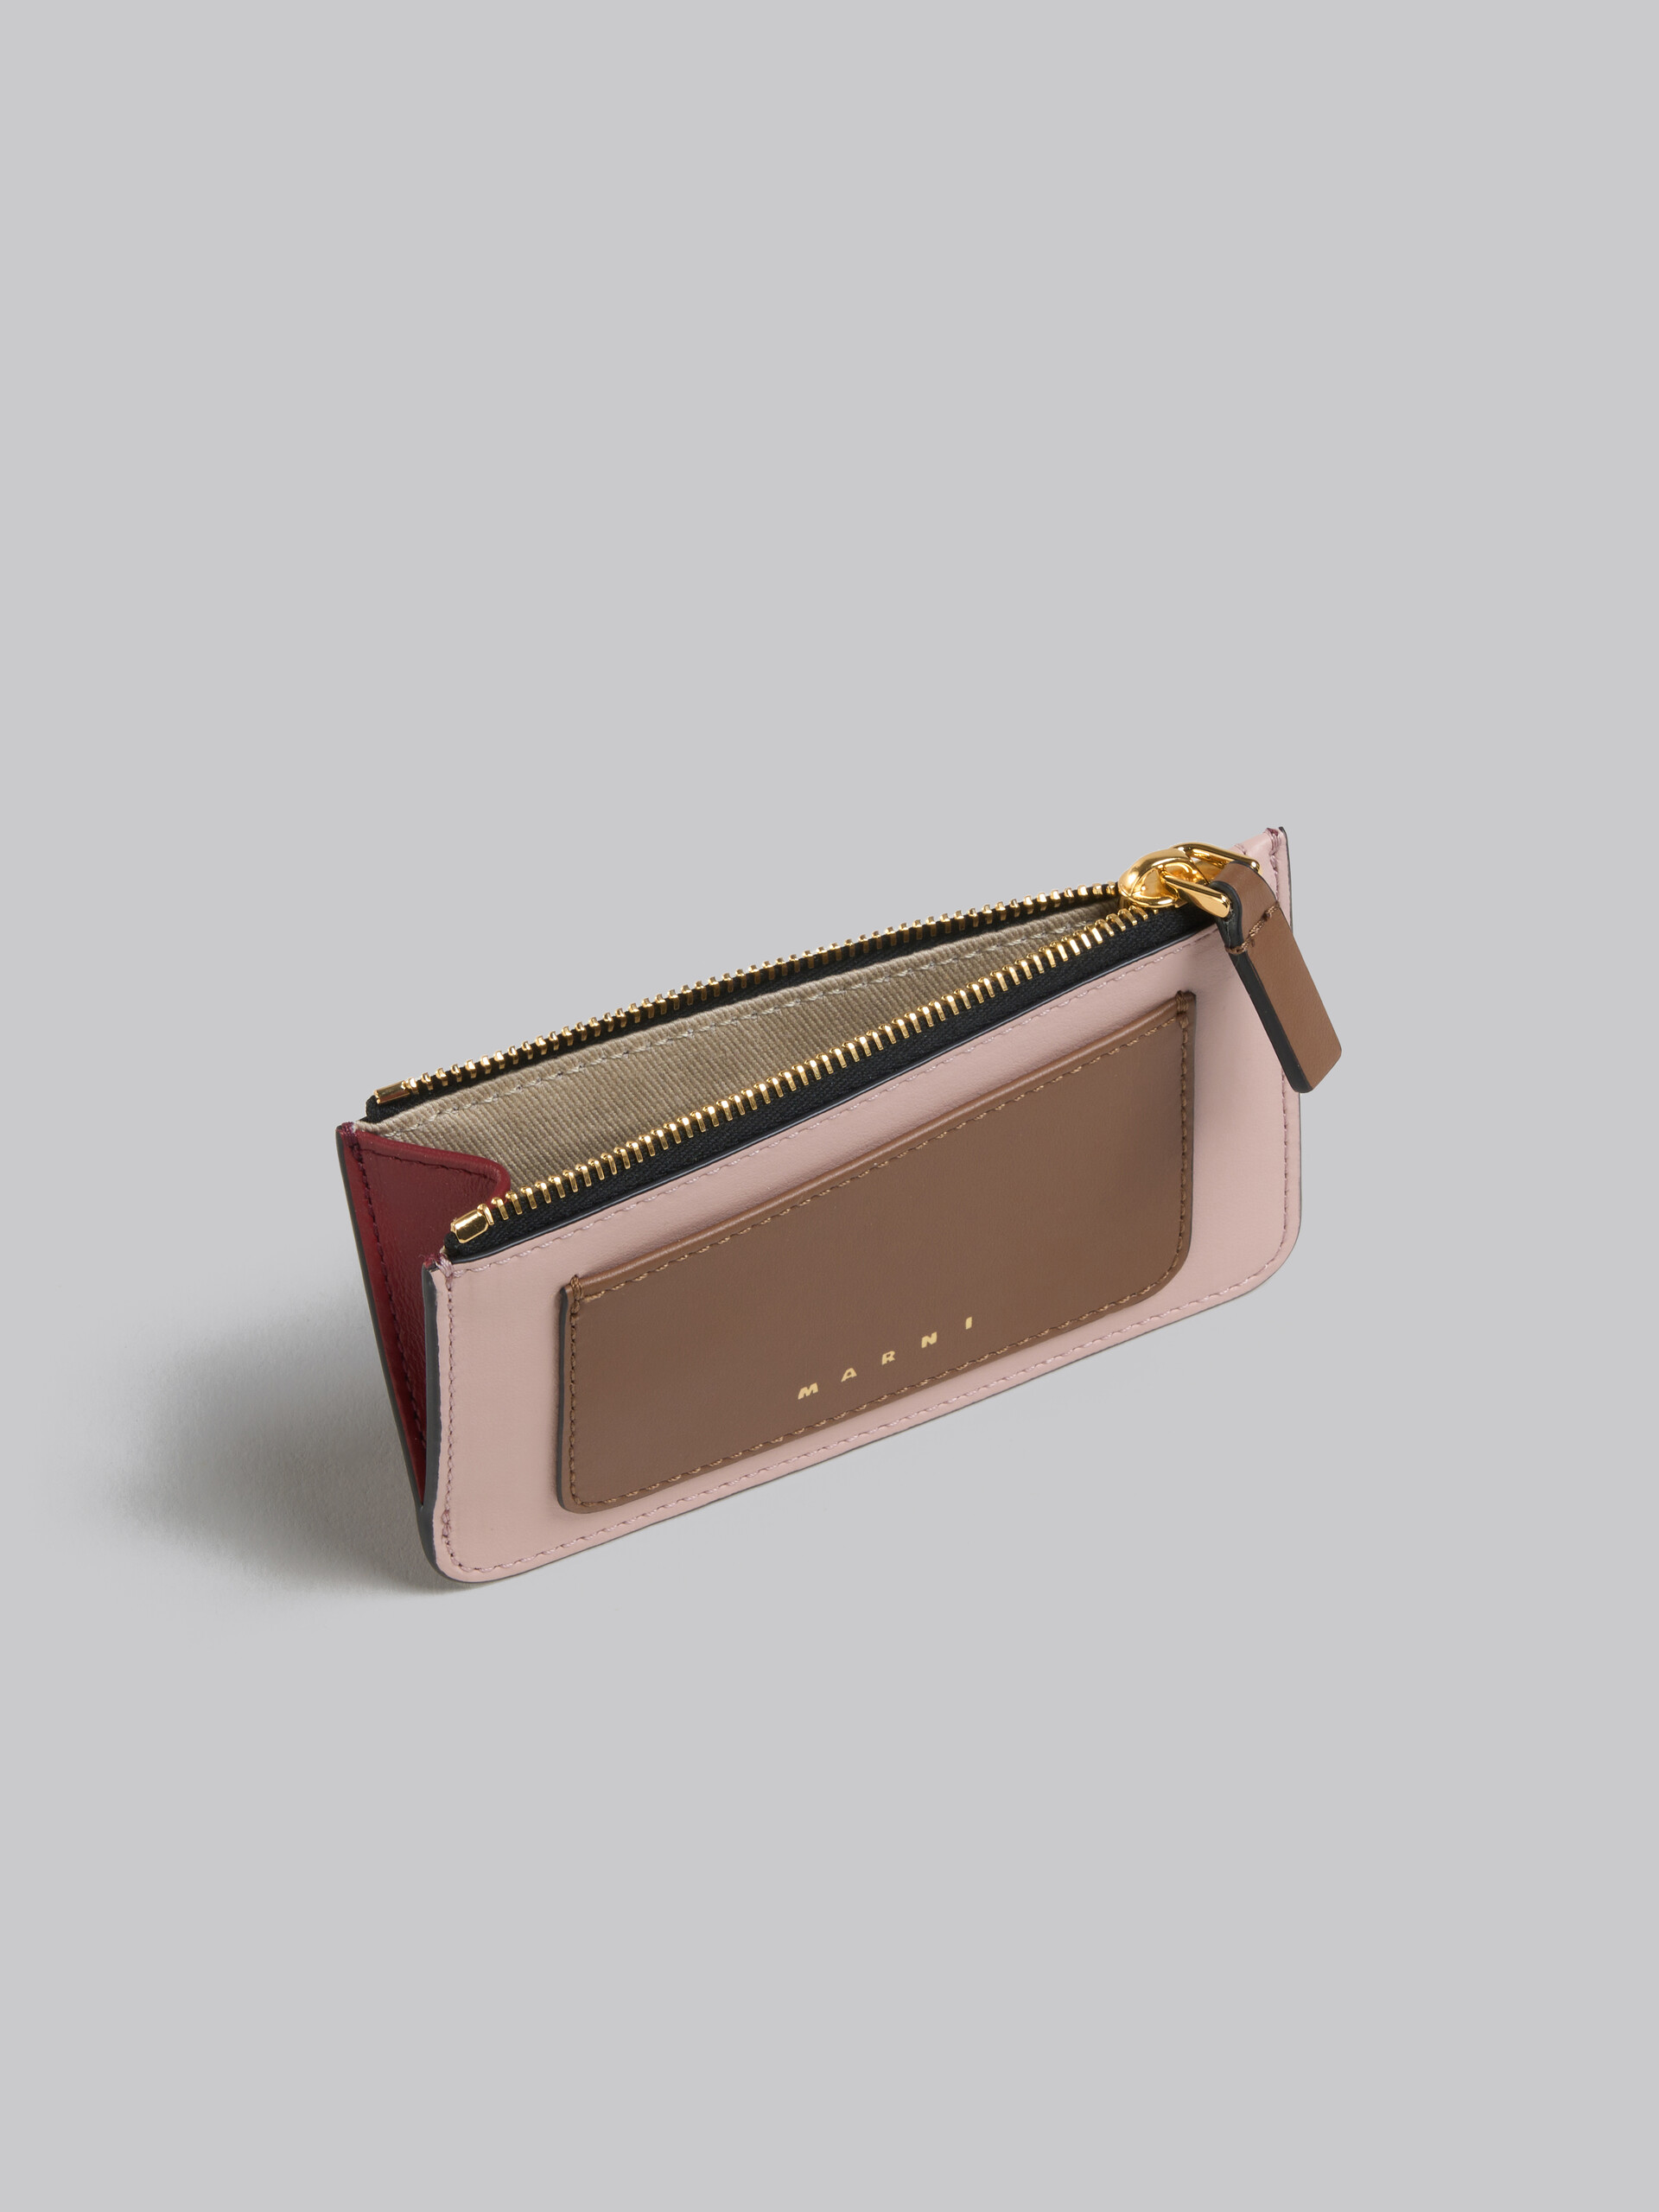 ブラウン、ピンク、バーガンディ サフィアーノレザー製 カードケース - 財布 - Image 2